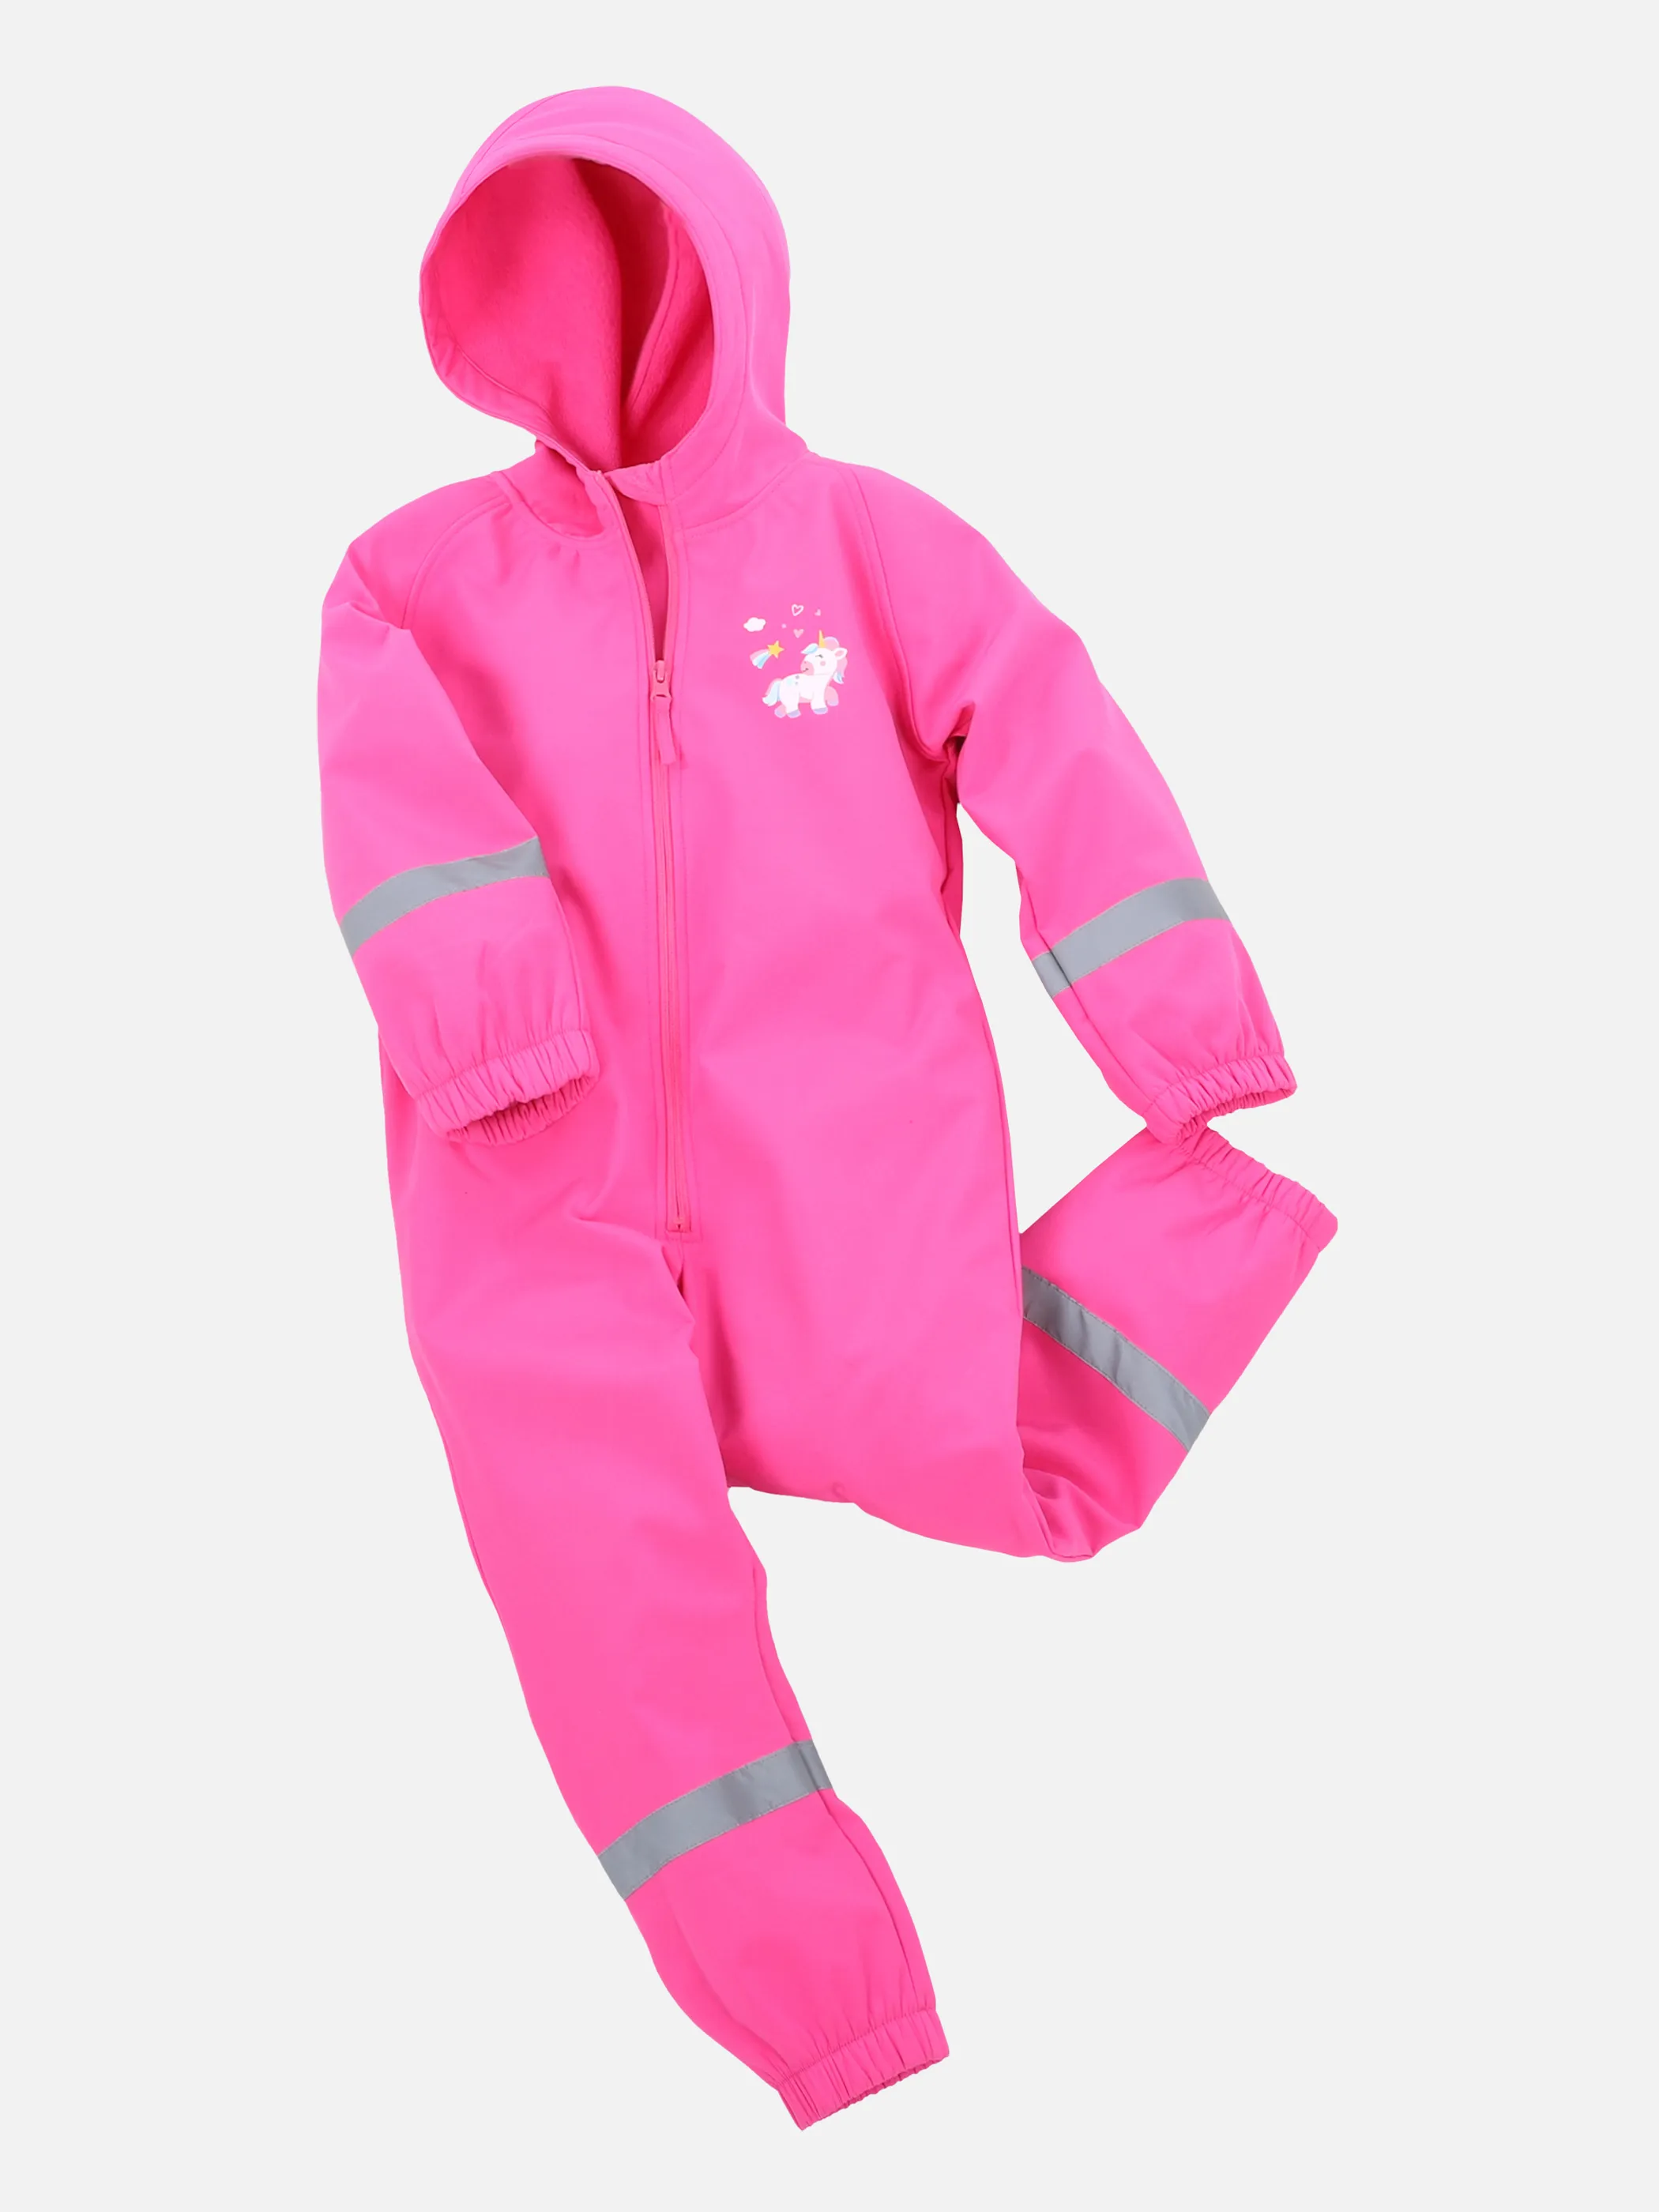 PINK noSize Regenoverall Kinder mit Kapuze 862272-pink | | |